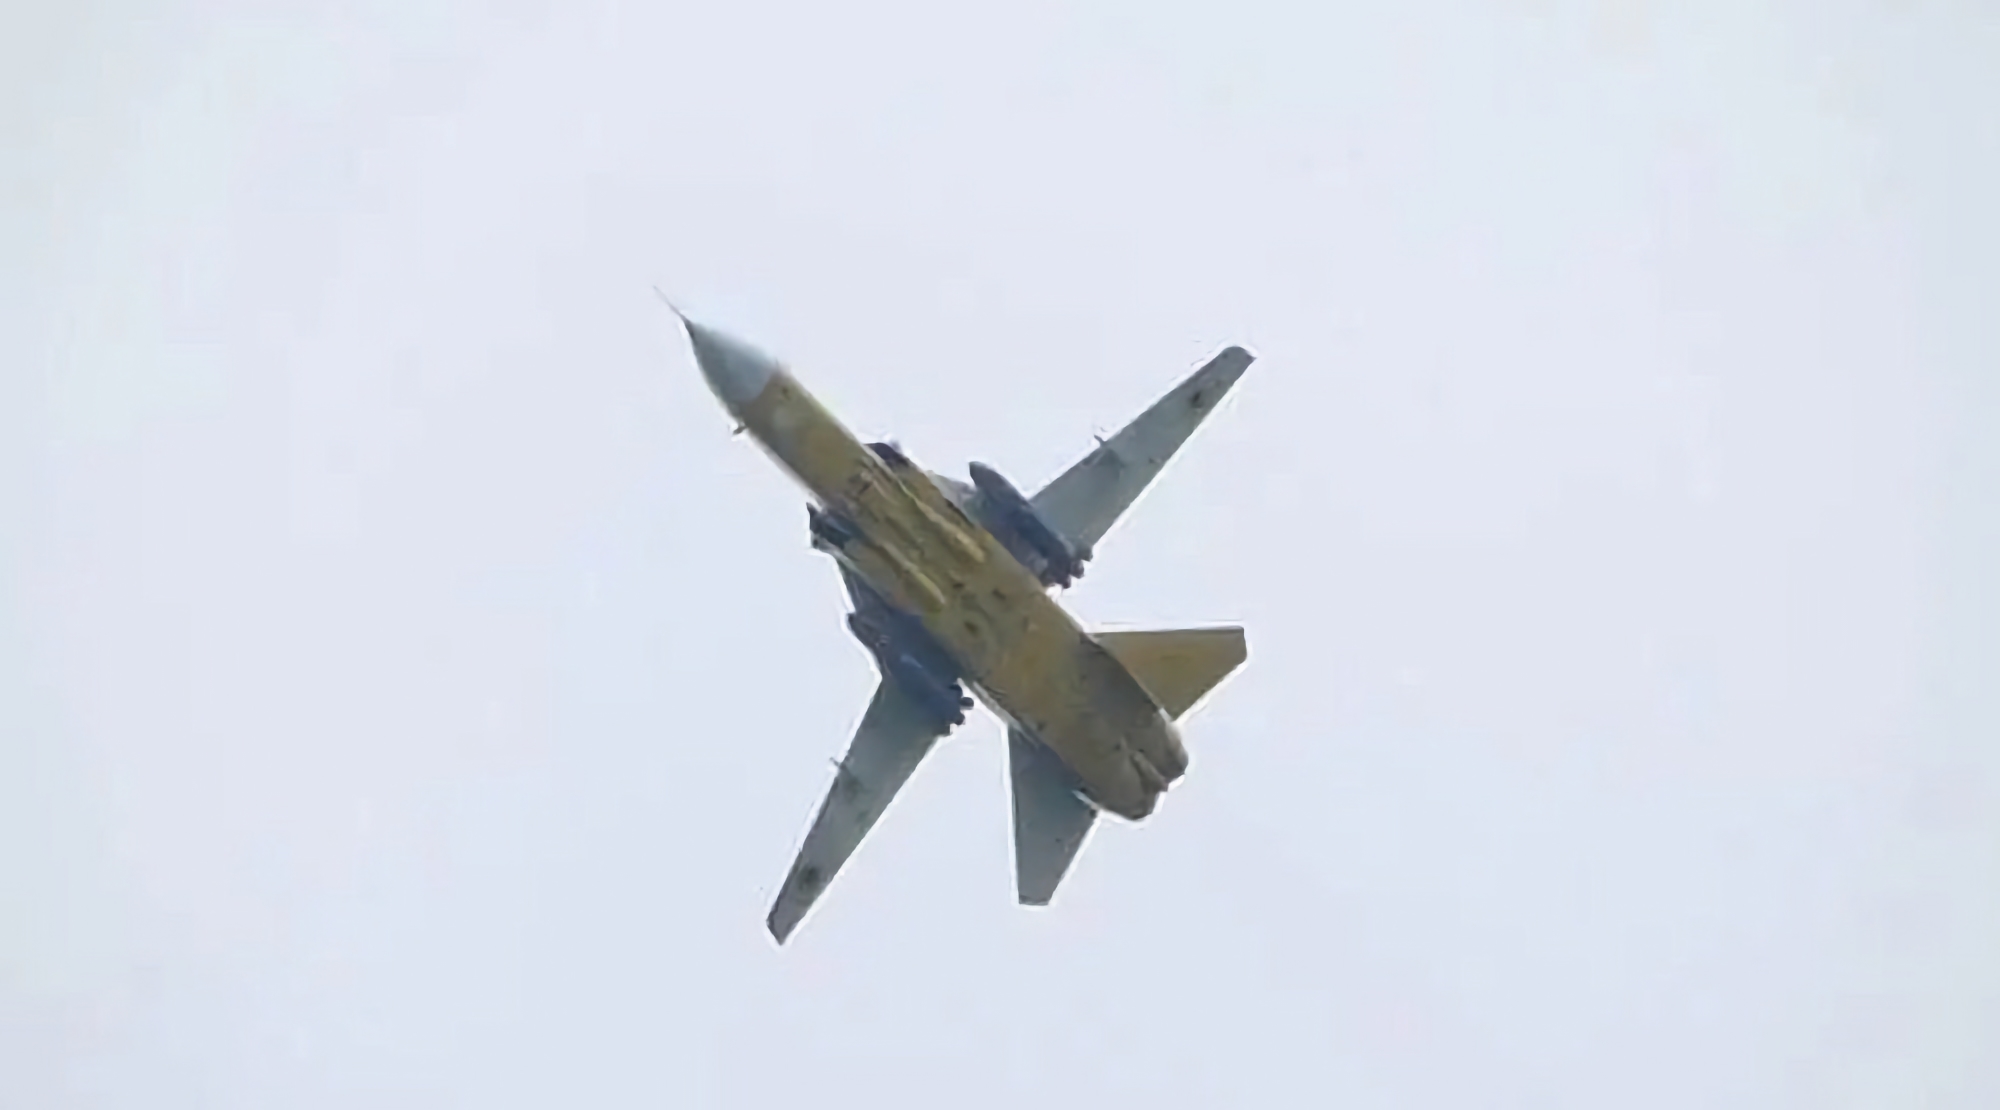 Les bombardiers ukrainiens Su-24 sont équipés de pylônes provenant d'avions britanniques Tornado, ce qui leur permet de transporter des missiles Storm Shadow.